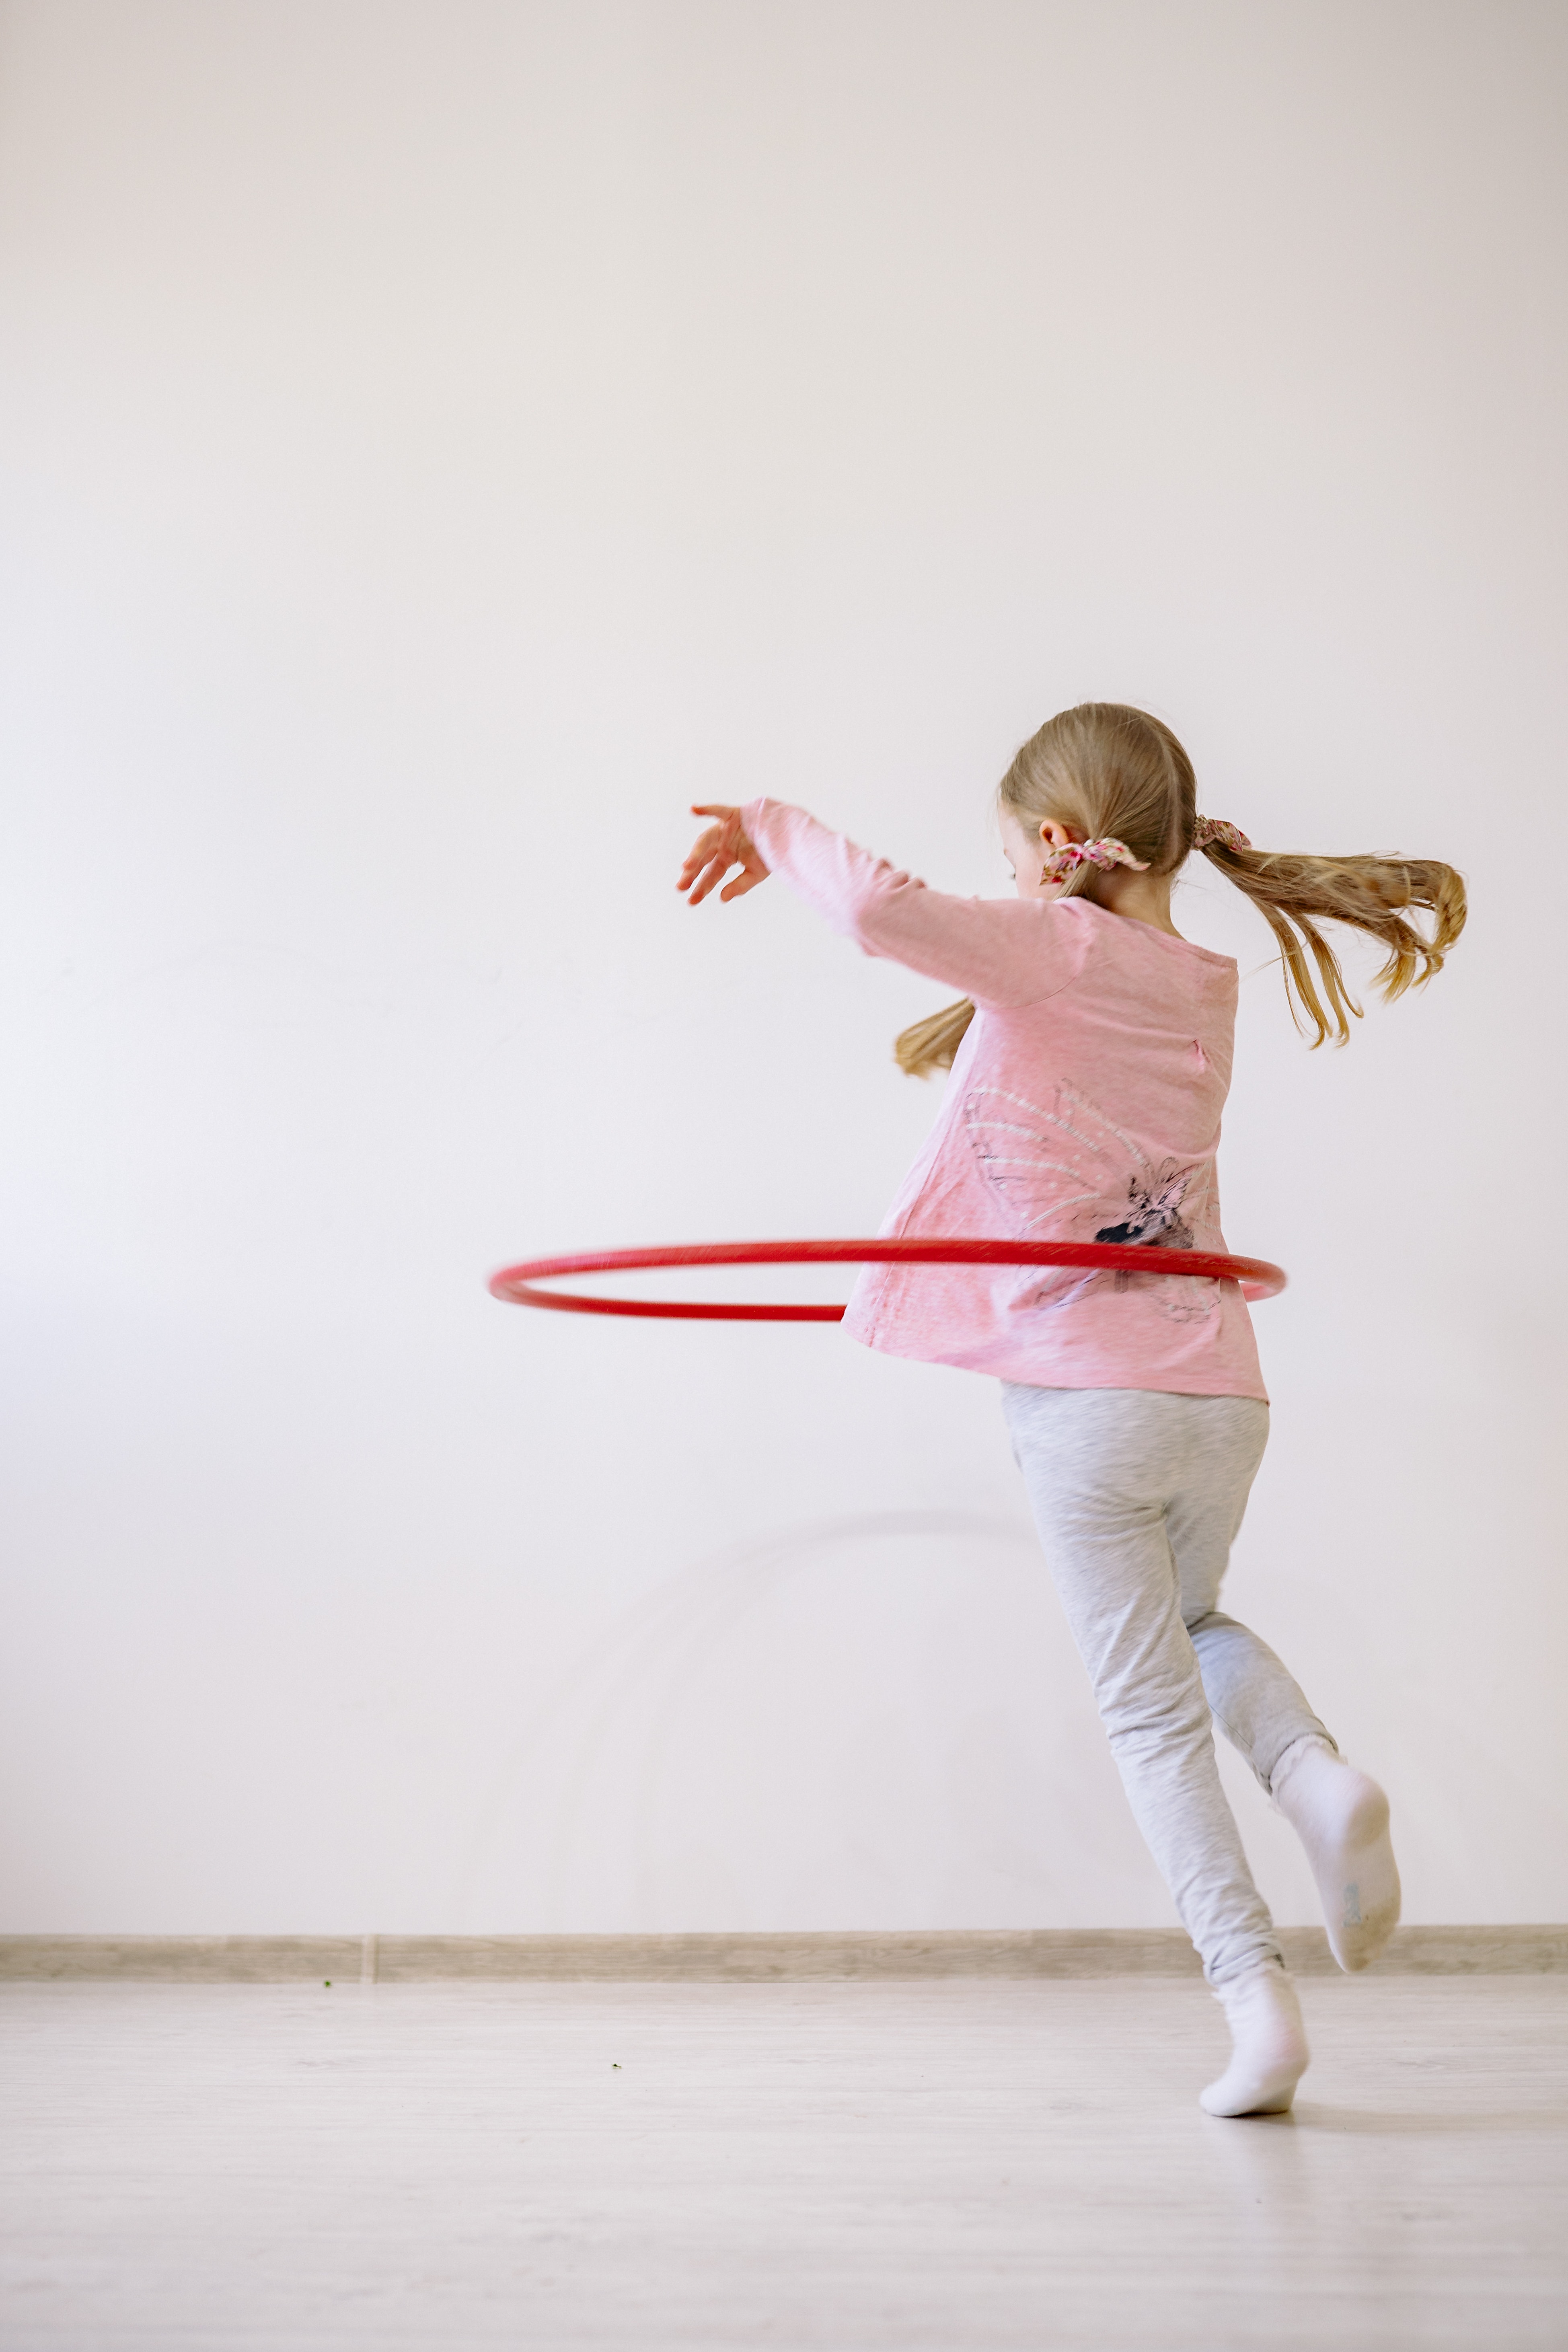 La imagen muestra a una chica jugando con un hula hoop.